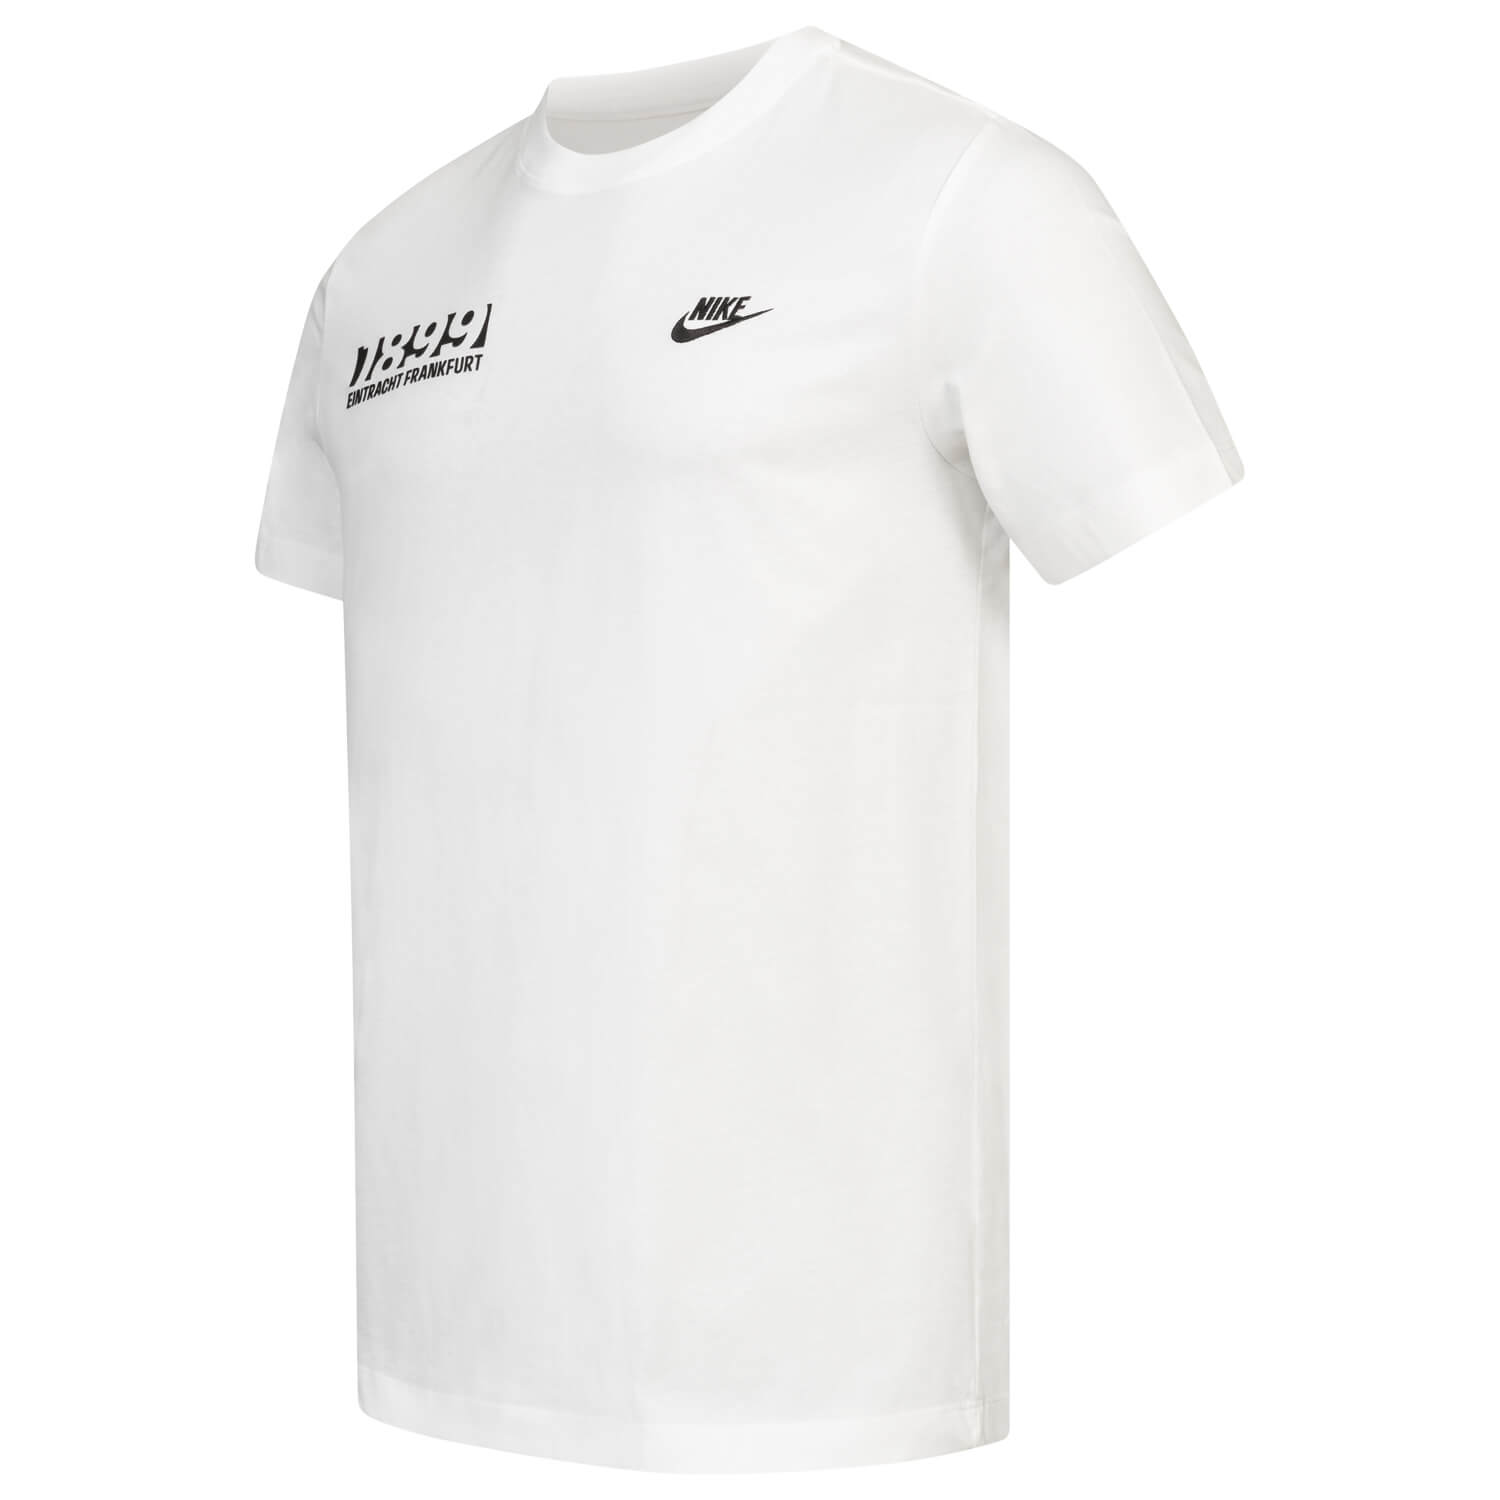 Bild 3: Nike T-Shirt 1899 White